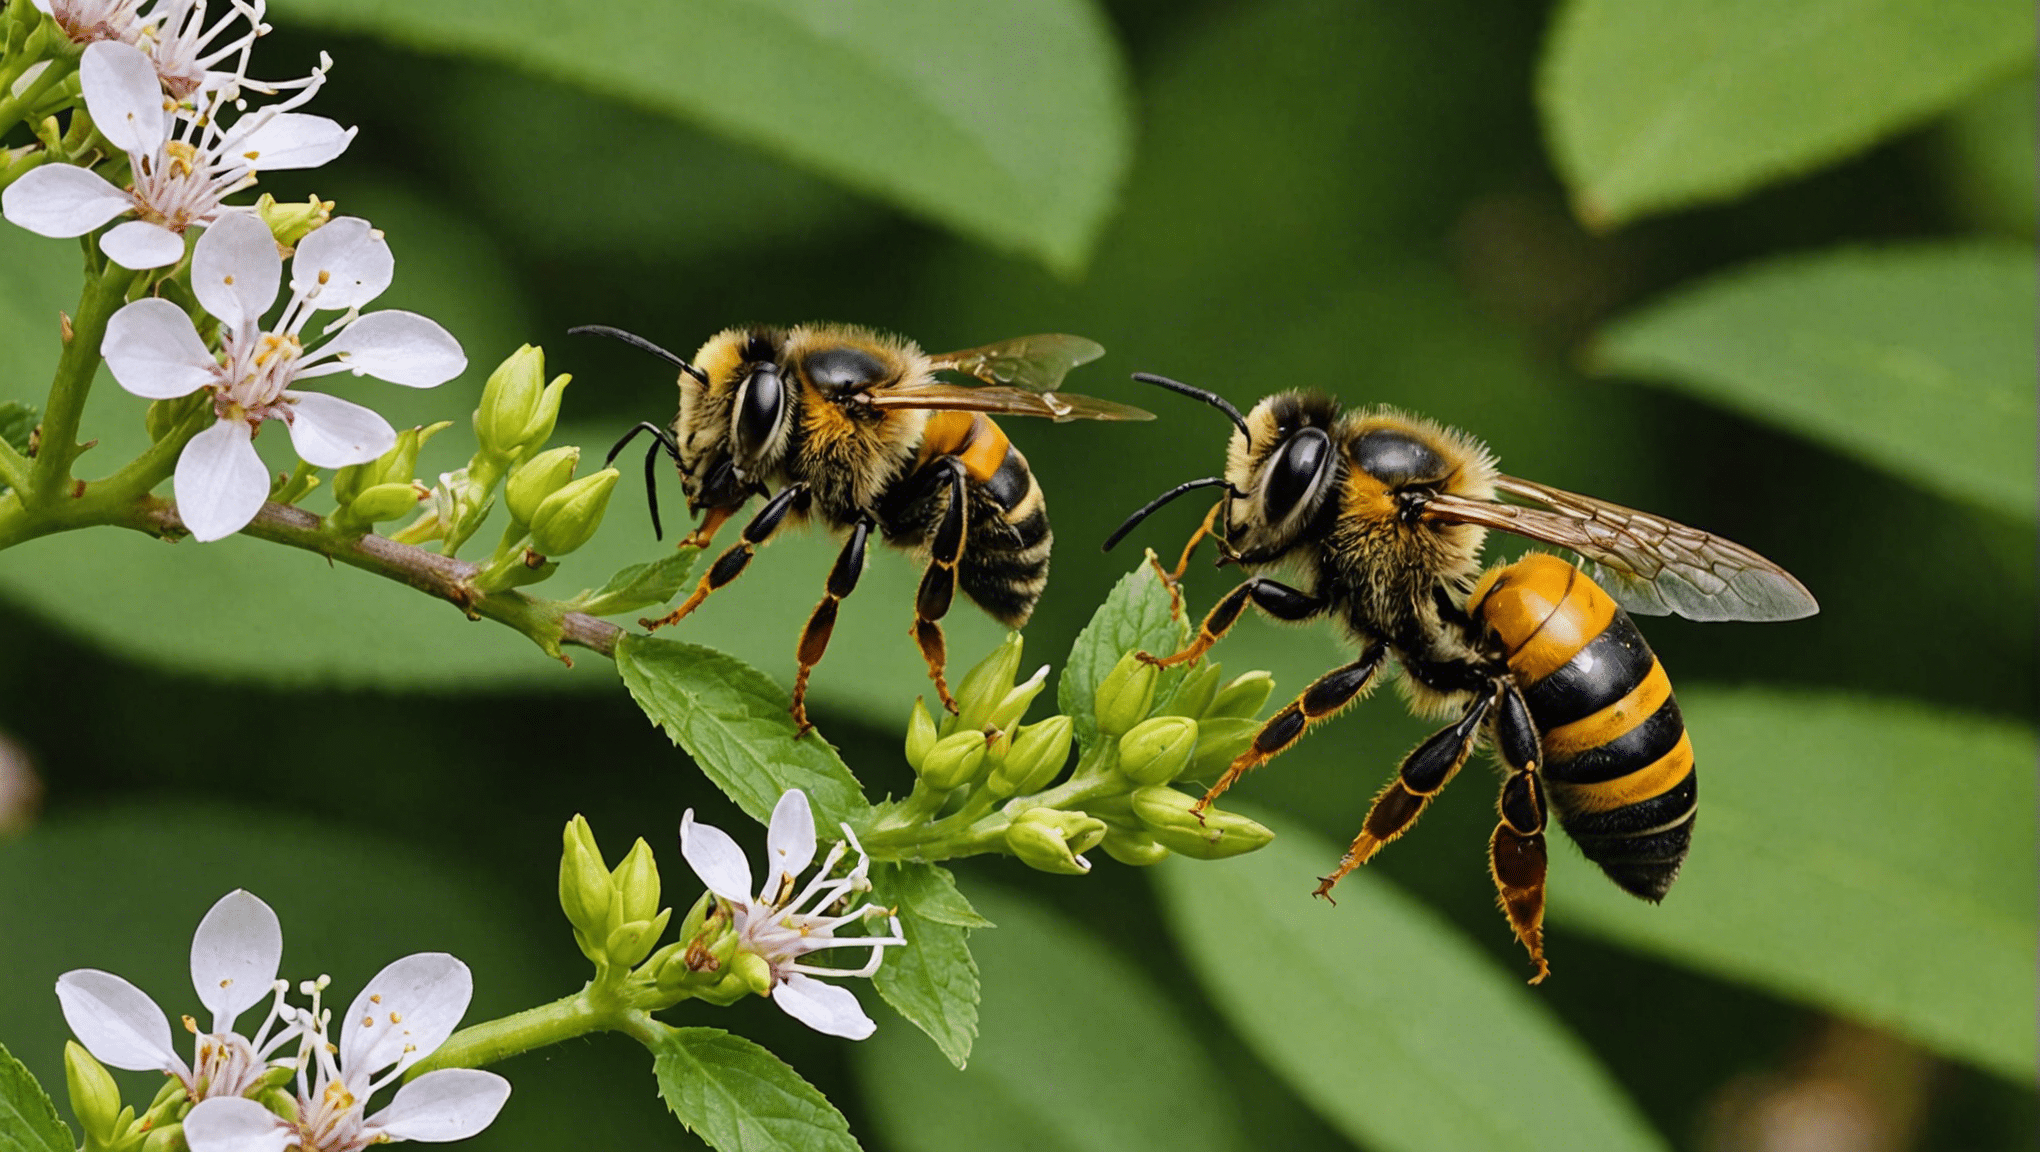 לגלות את ההבחנות בין דבורים, צרעות וצרעות וללמוד על המראה, ההתנהגות ובתי הגידול שלהן.